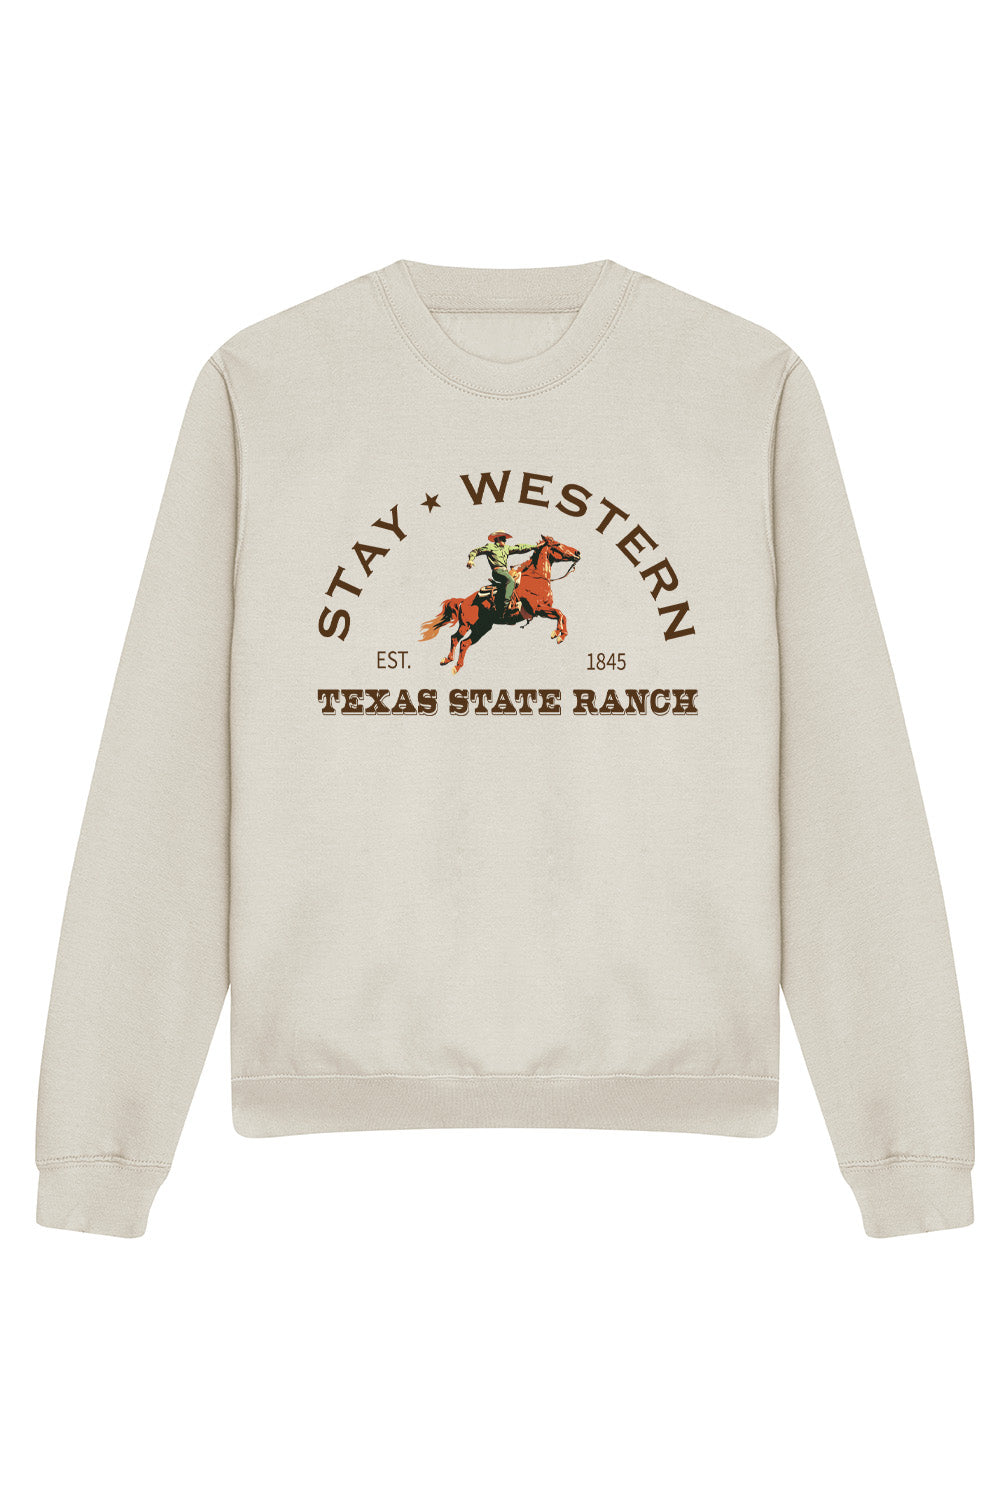 Stay Western Sweatshirt In Natural Stone (Custom Pack)